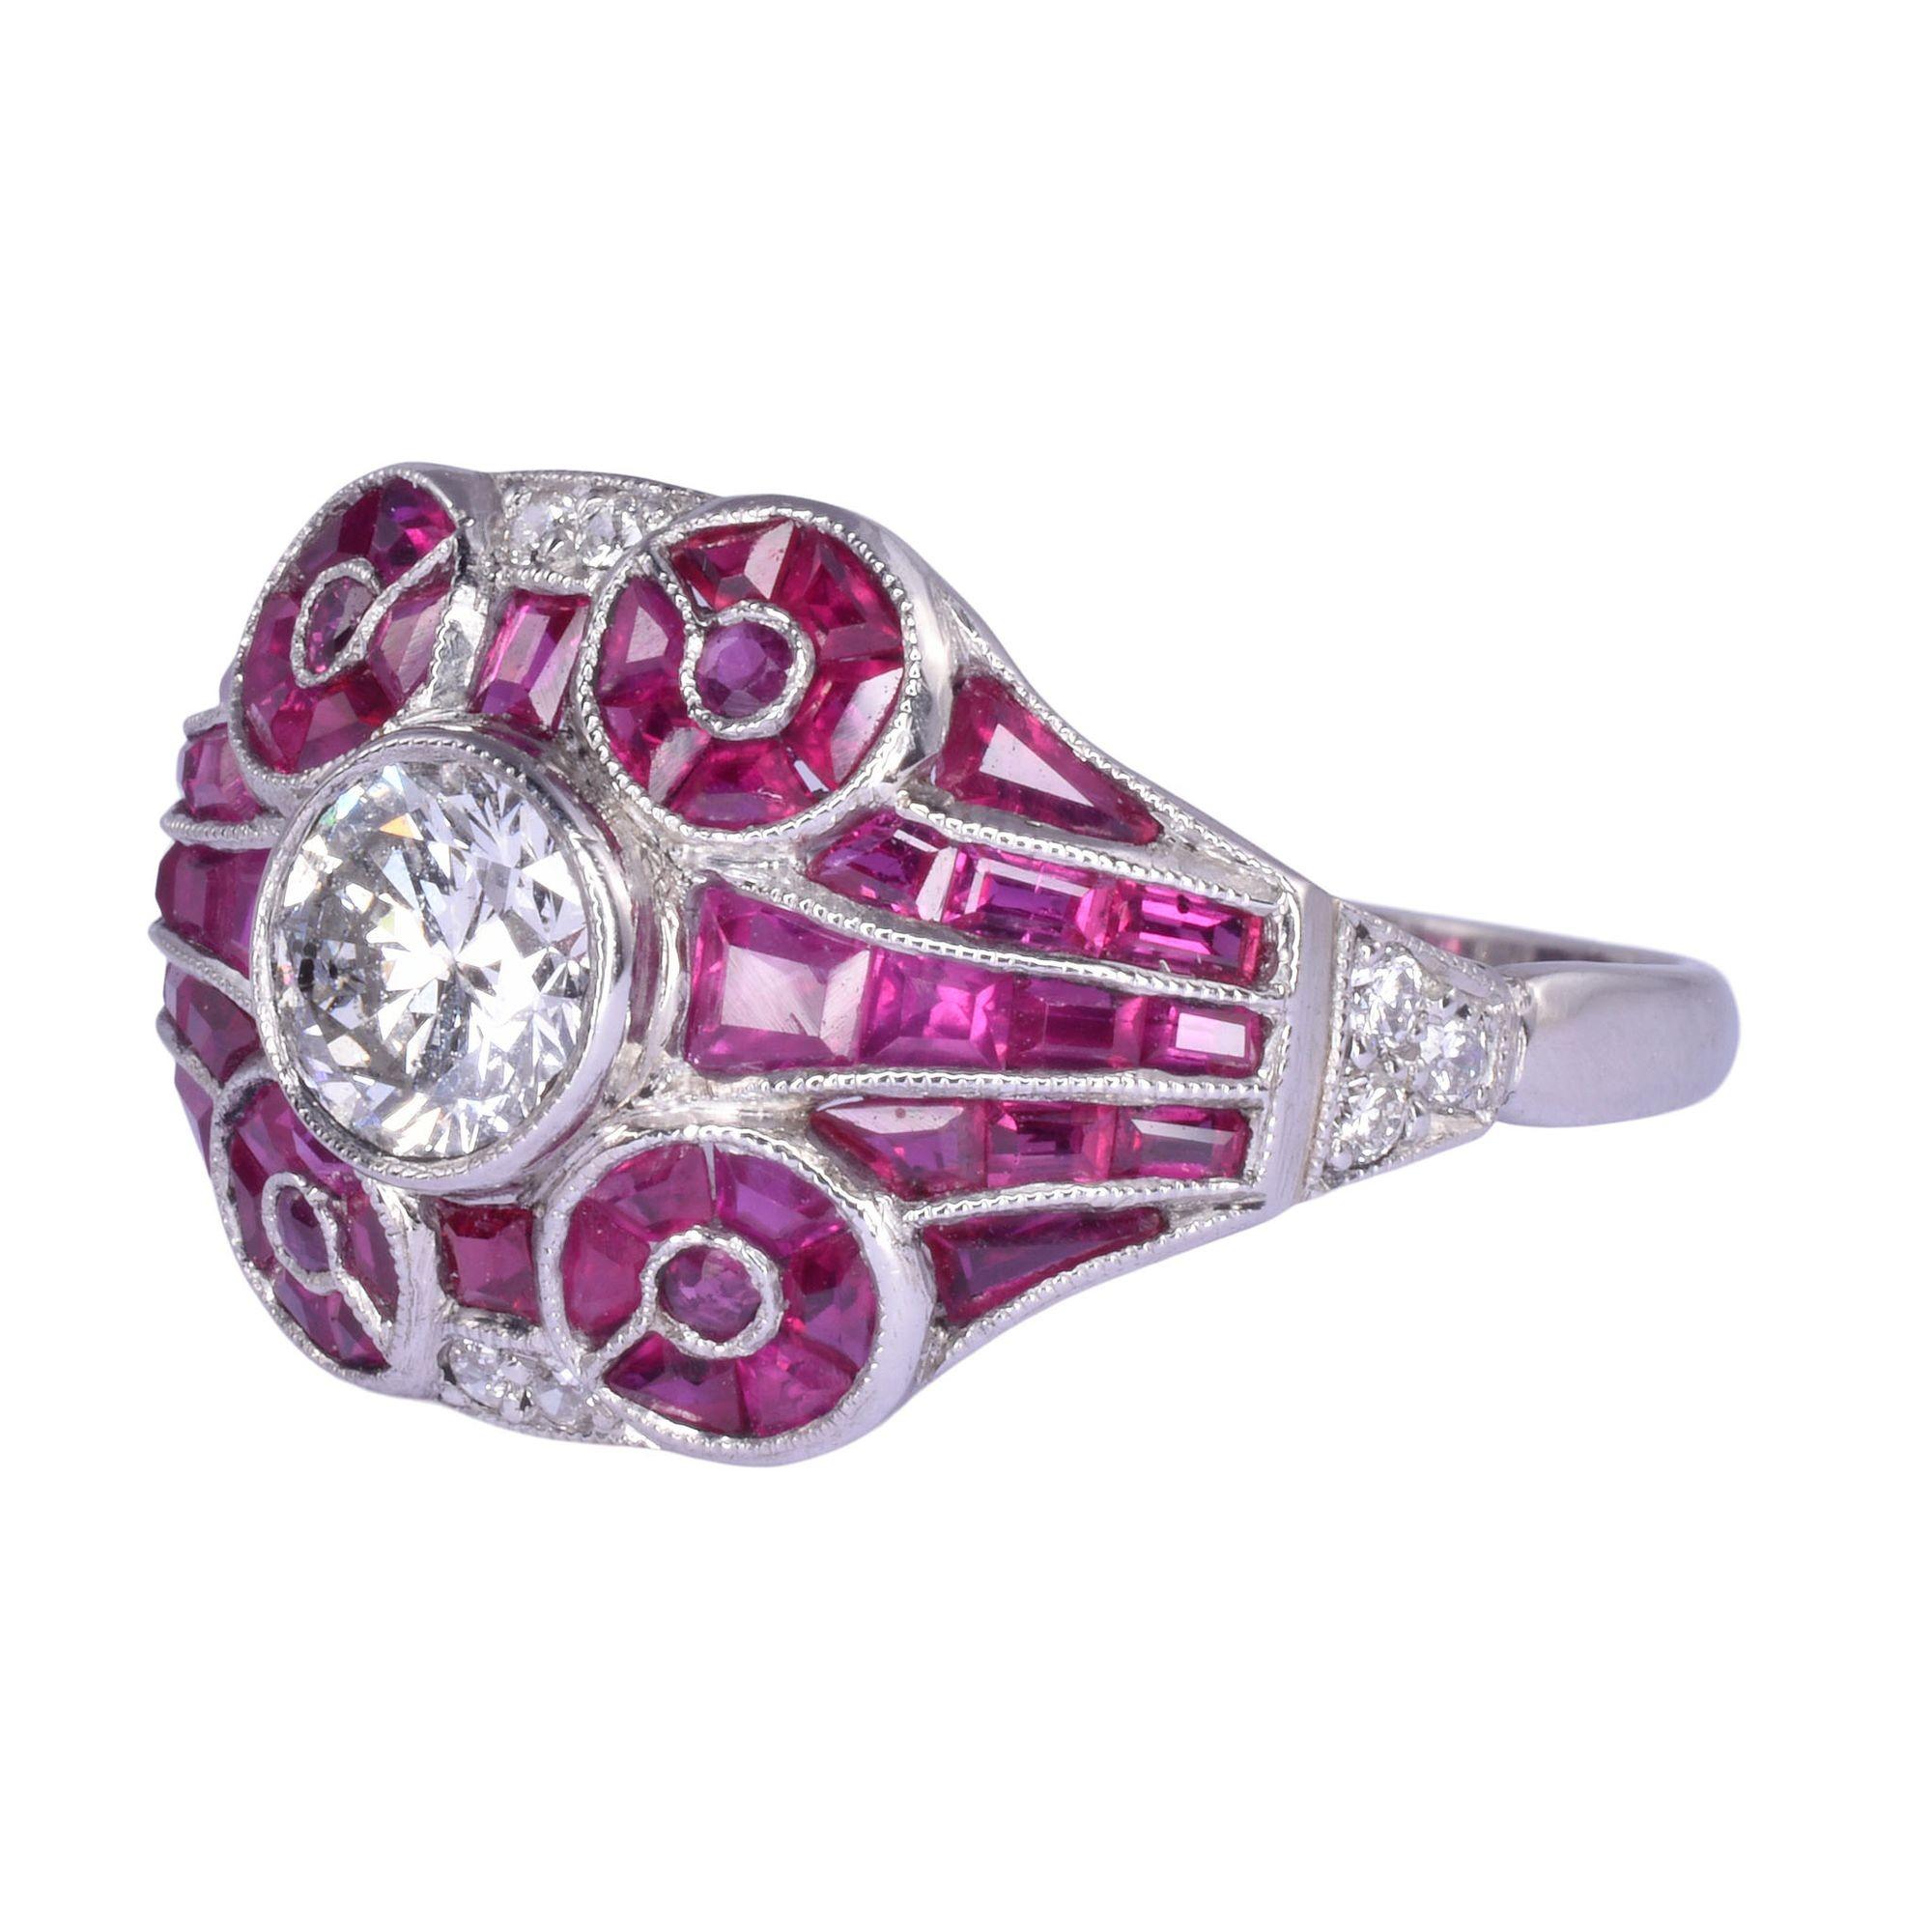 Französischer Platin-Diamant-Rubin-Ring, um 1940. Dieser französische Vintage-Ring ist handgefertigt aus Platin und enthält einen runden Diamanten mit Brillantschliff von 0,50 Karat und einer Reinheit von SI2 und Farbe K. Er ist mit 54 Rubinen mit